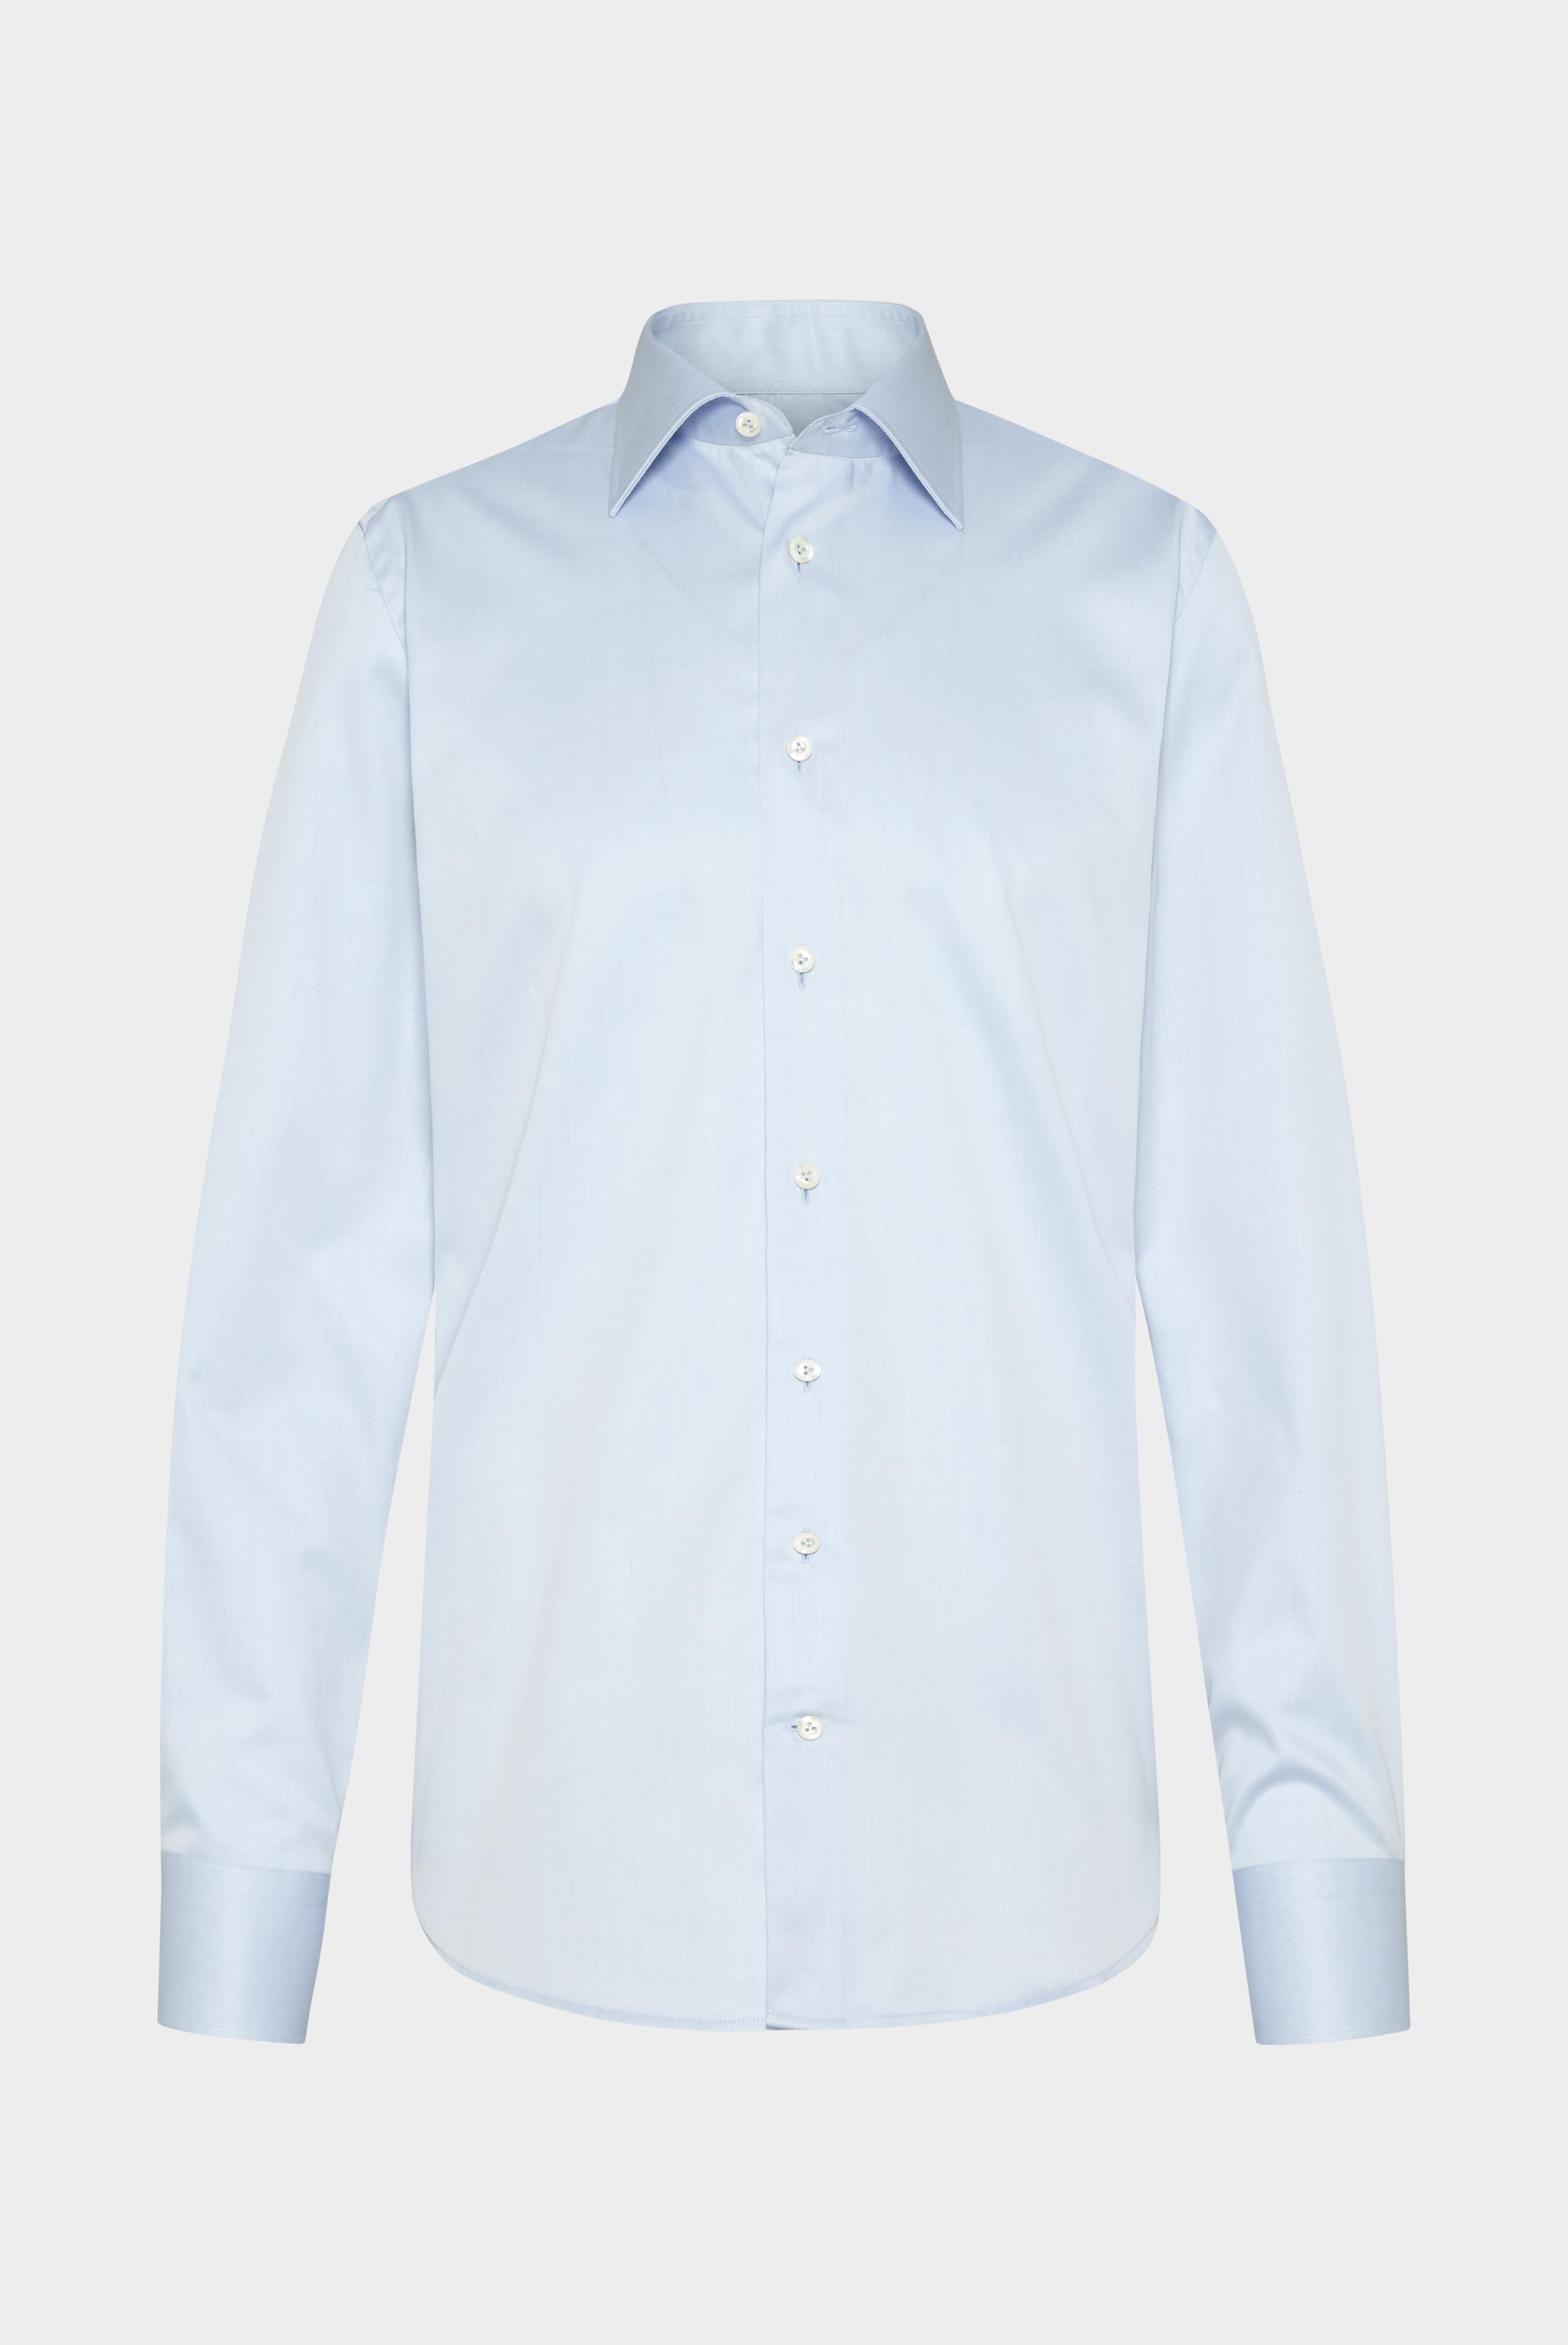 Bügelleichte Hemden+Bügelfreies Twill Hemd Comfort Fit+20.2046.BQ.132241.720.38